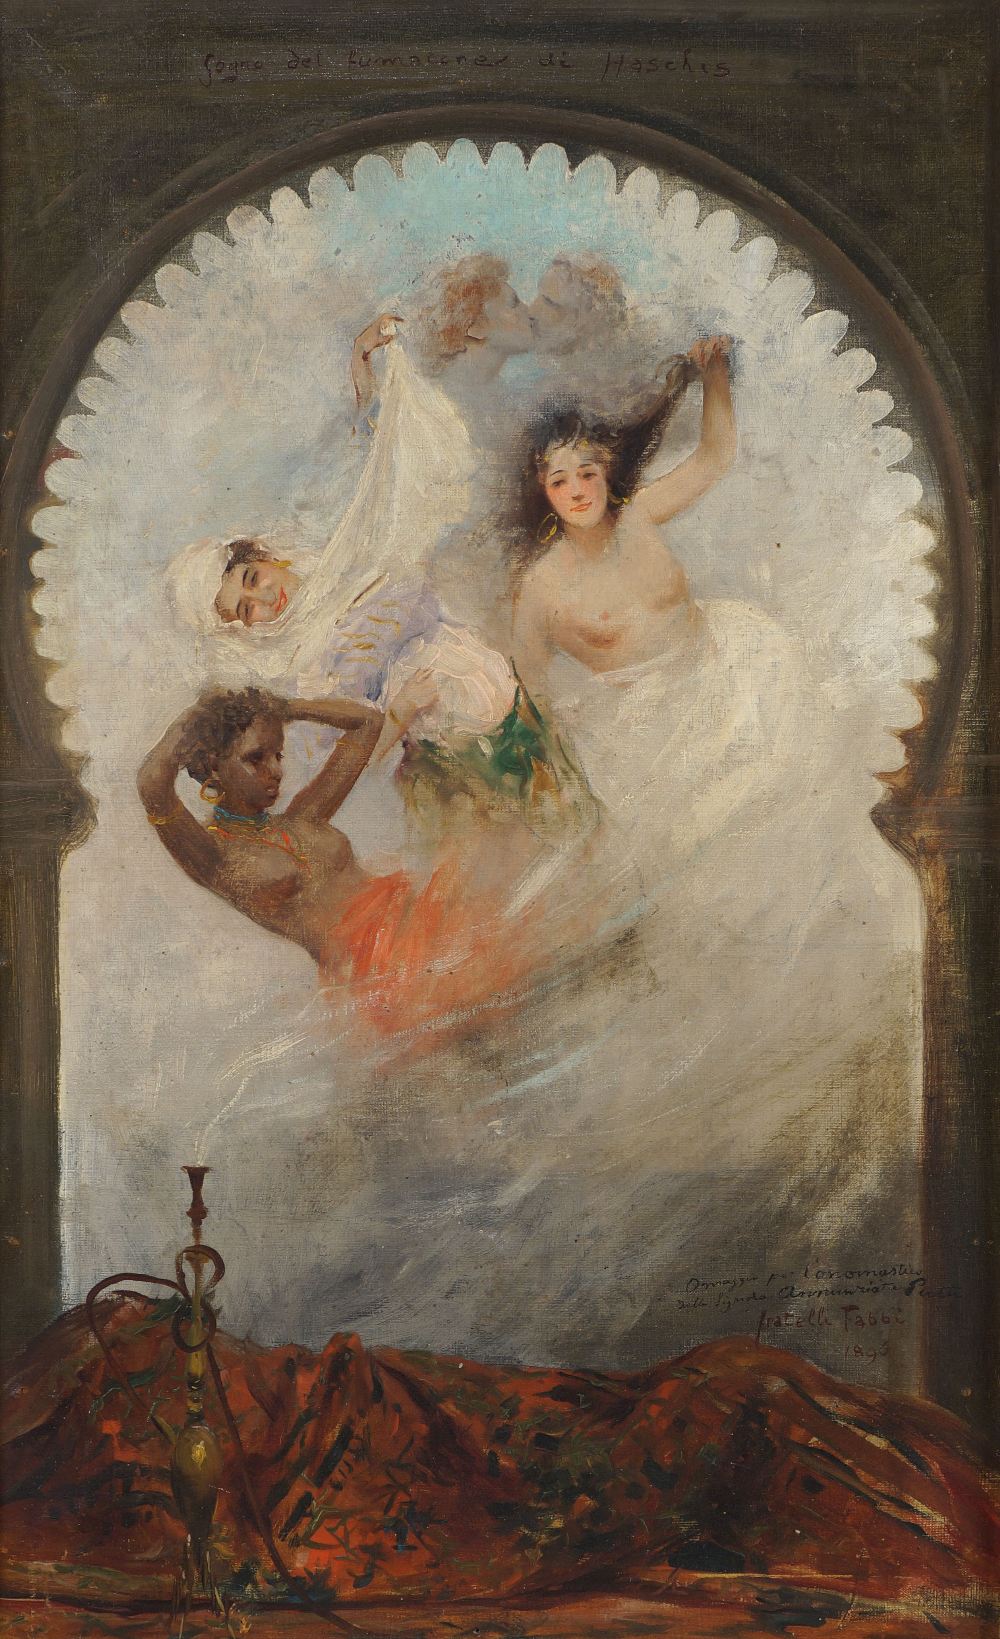 FRATELLI FABBI XIX Sec. "Il sogno del fumatore di Hashish", olio su tela, firmato e datato 1896 in